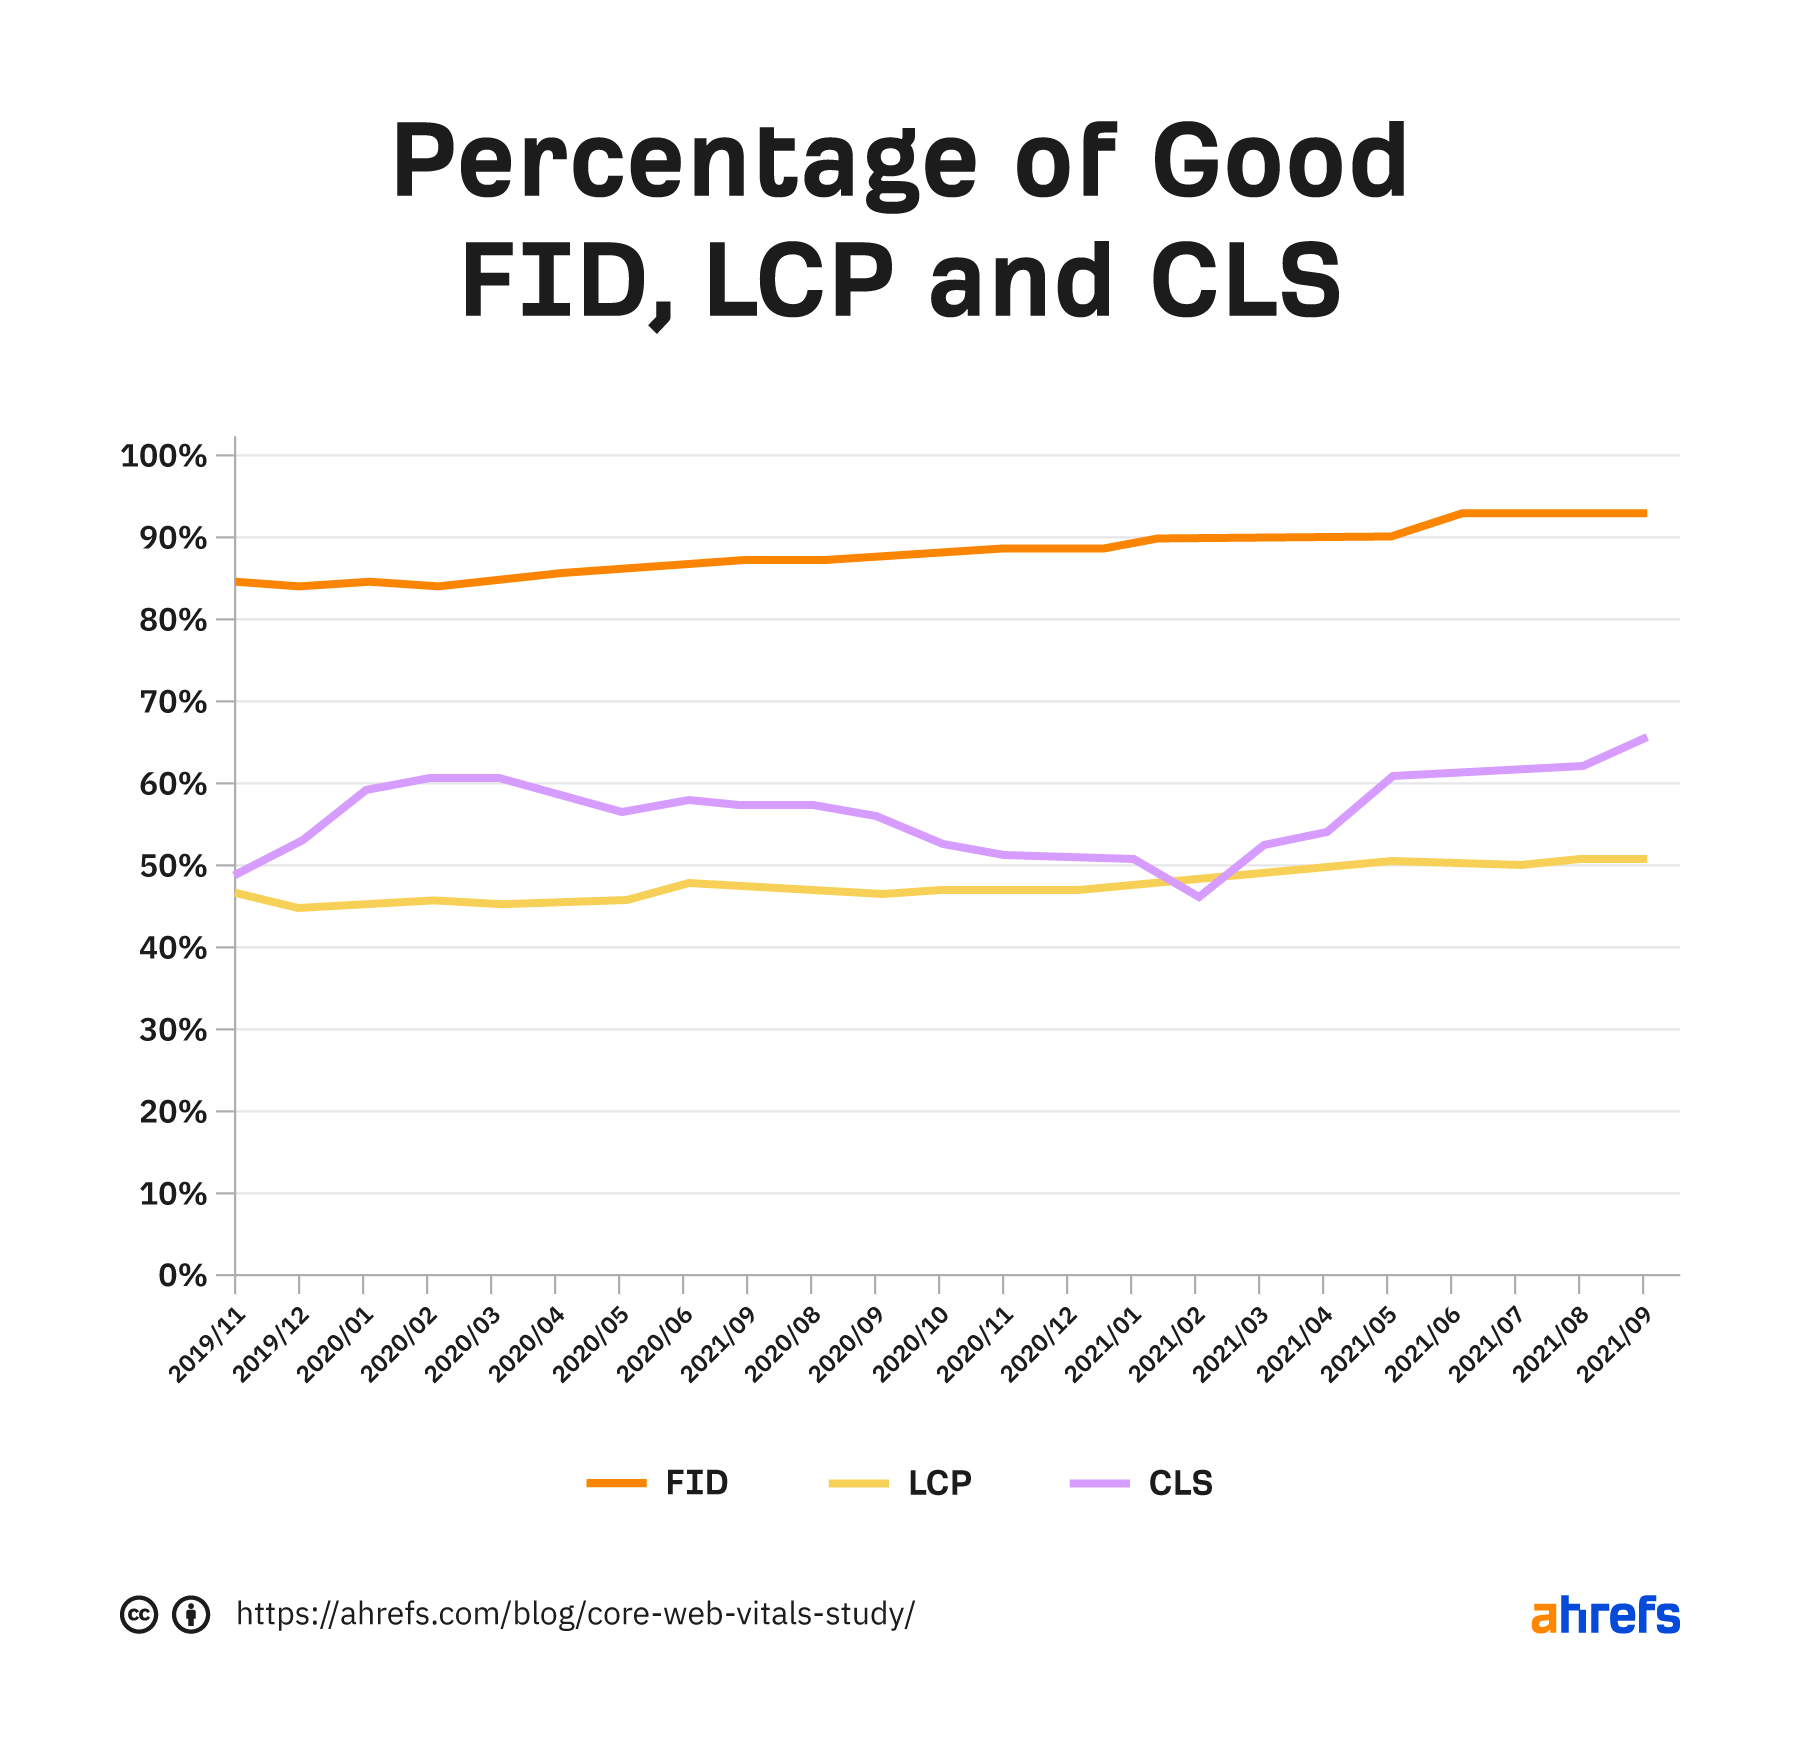 Gráfico que muestra el porcentaje de buenos FID, LCP y CLS a lo largo del tiempo